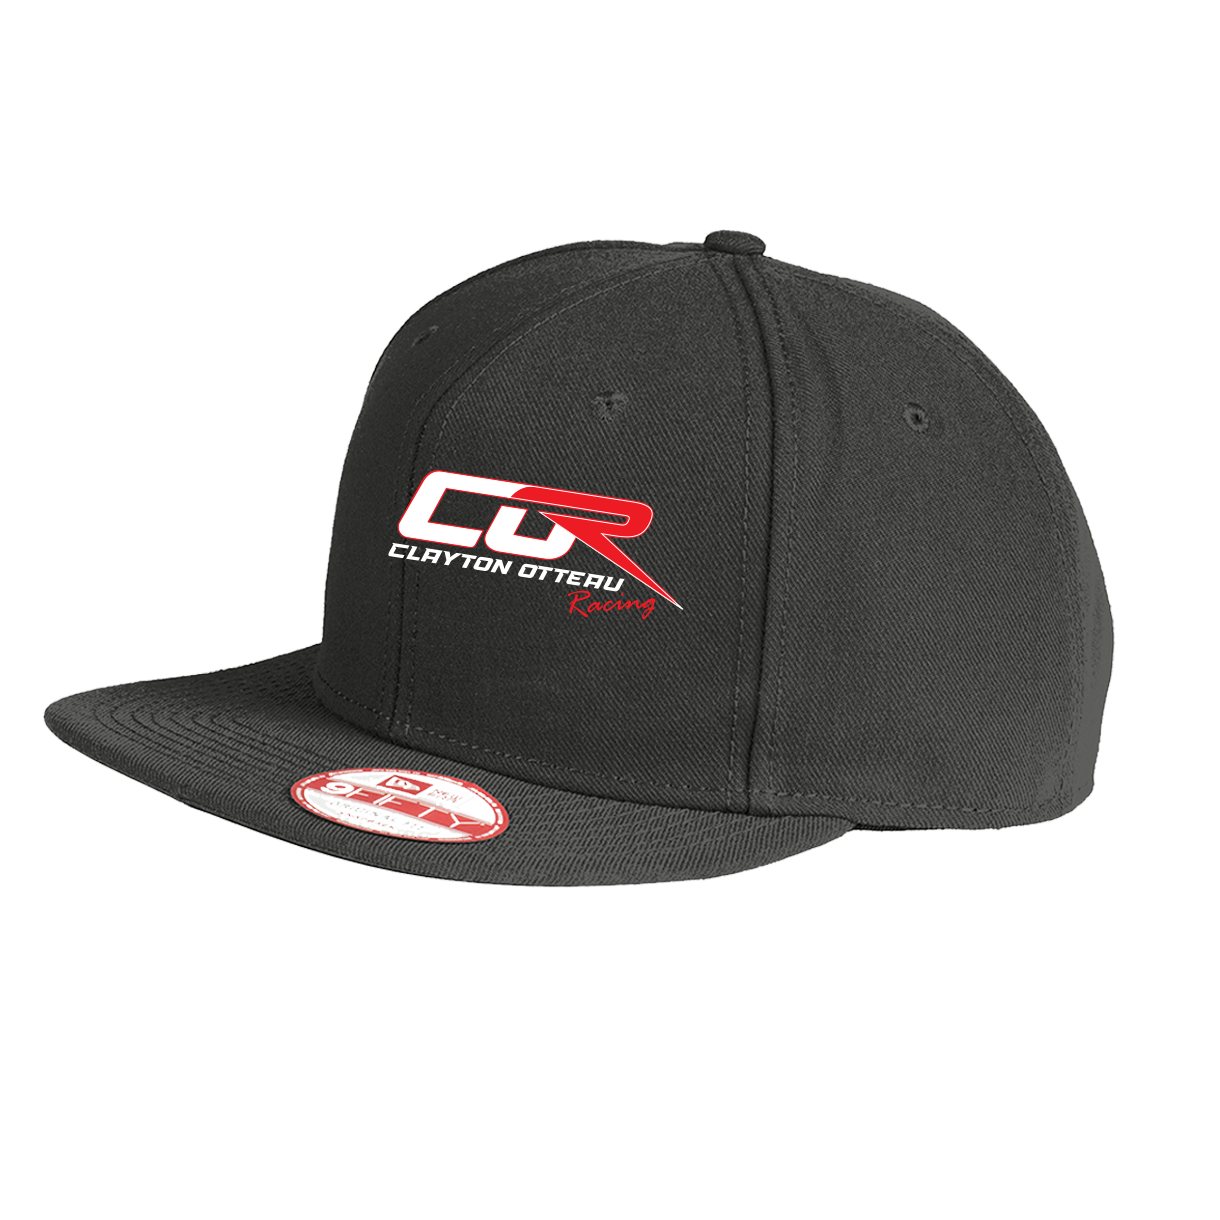 Clayton Otteau Logo Hat